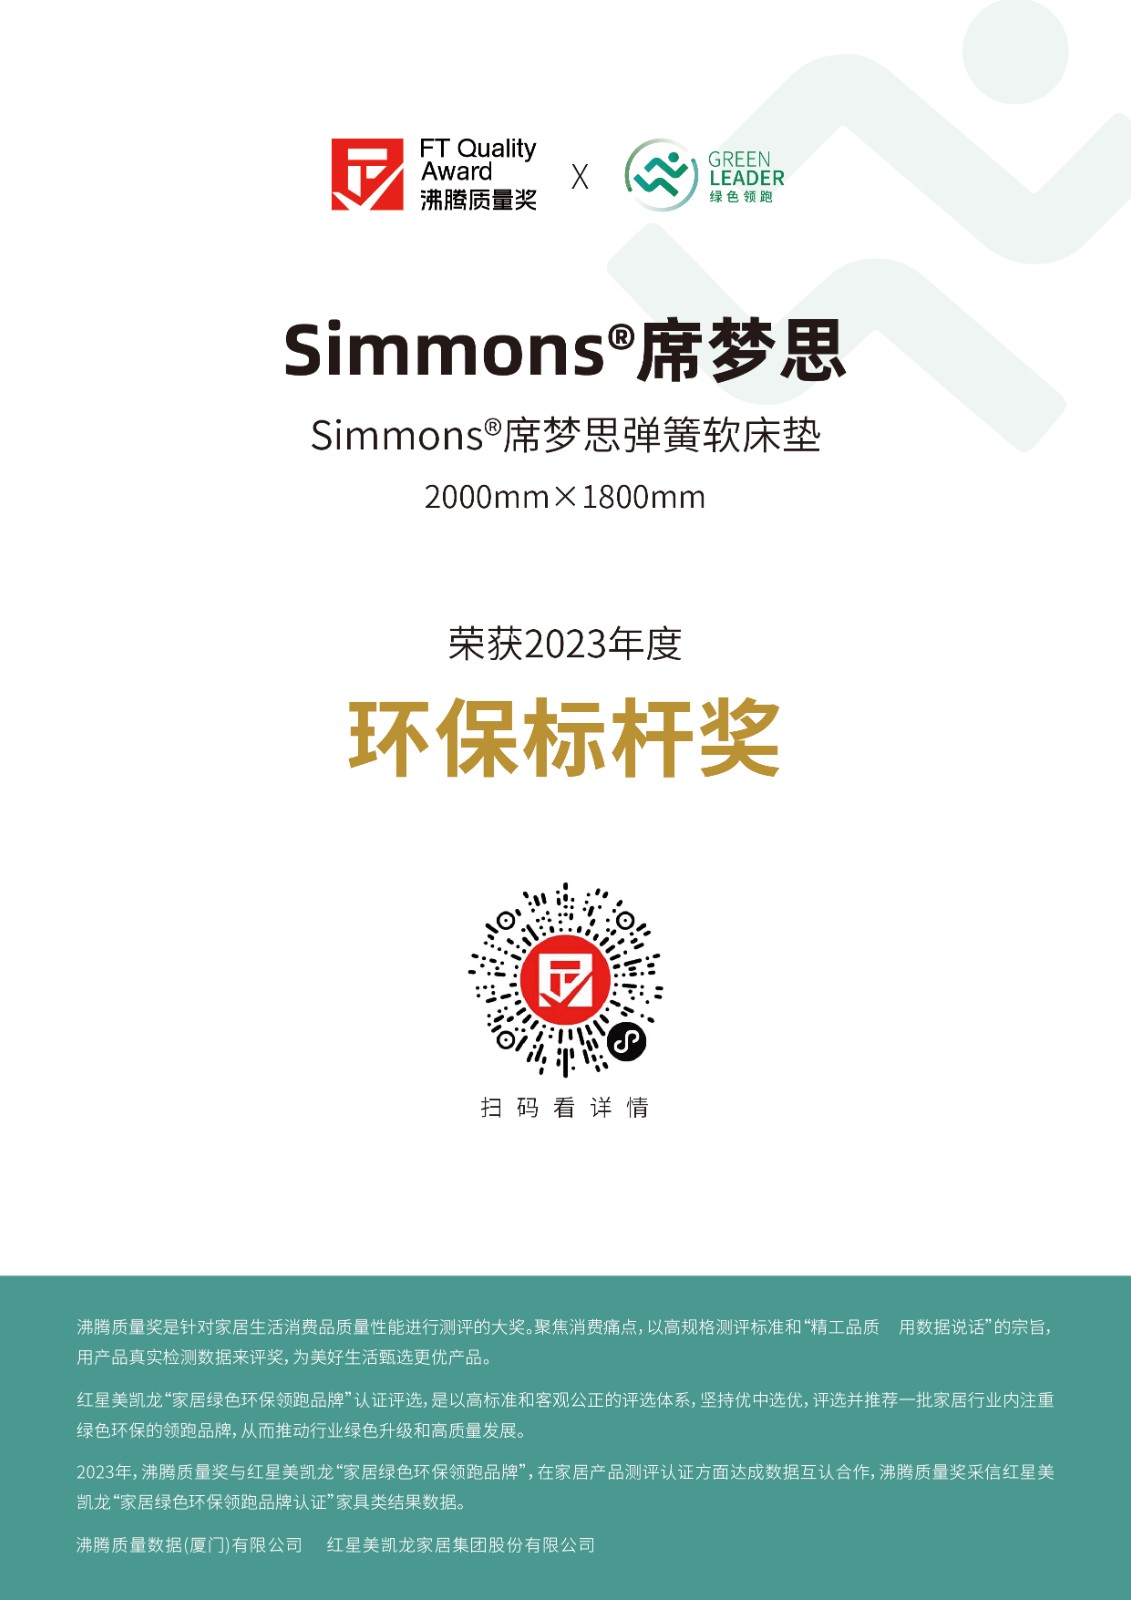 3 获奖证书-Simmons席梦思-红星美凯龙绿色领跑-Simmons席梦思弹簧软床垫-2000mm×1800mm.jpg